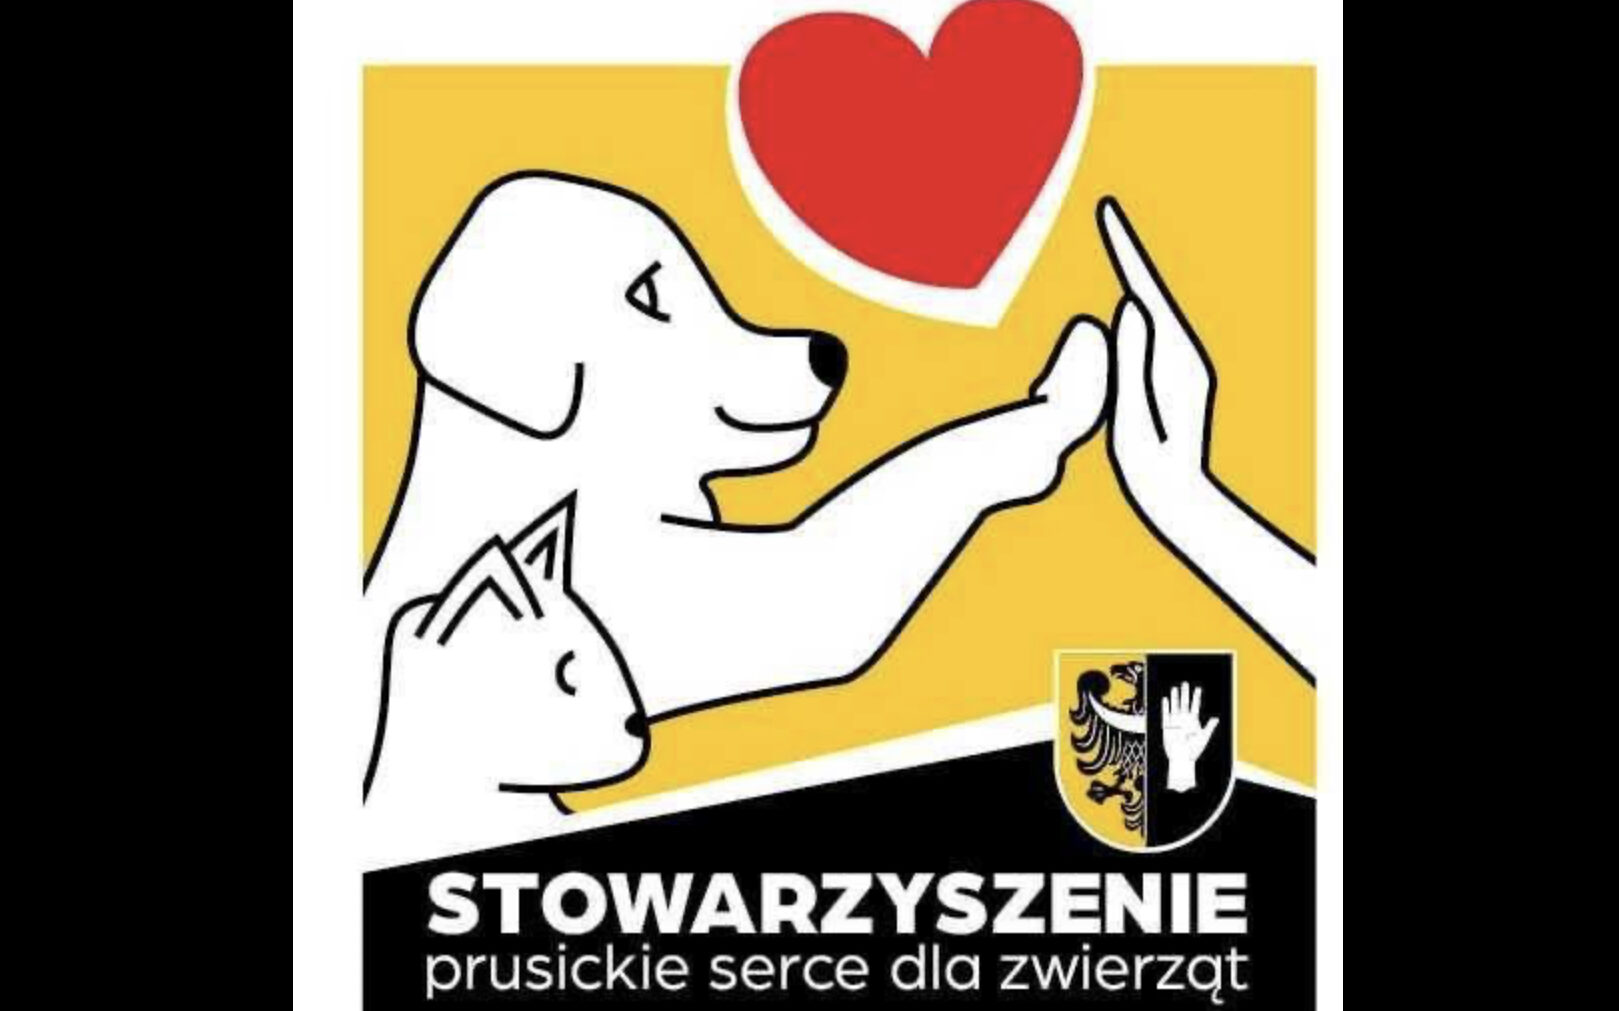 Stowarzyszenie Prusickie Serce dla Zwierząt organizuje zbiórkę na przytulisko